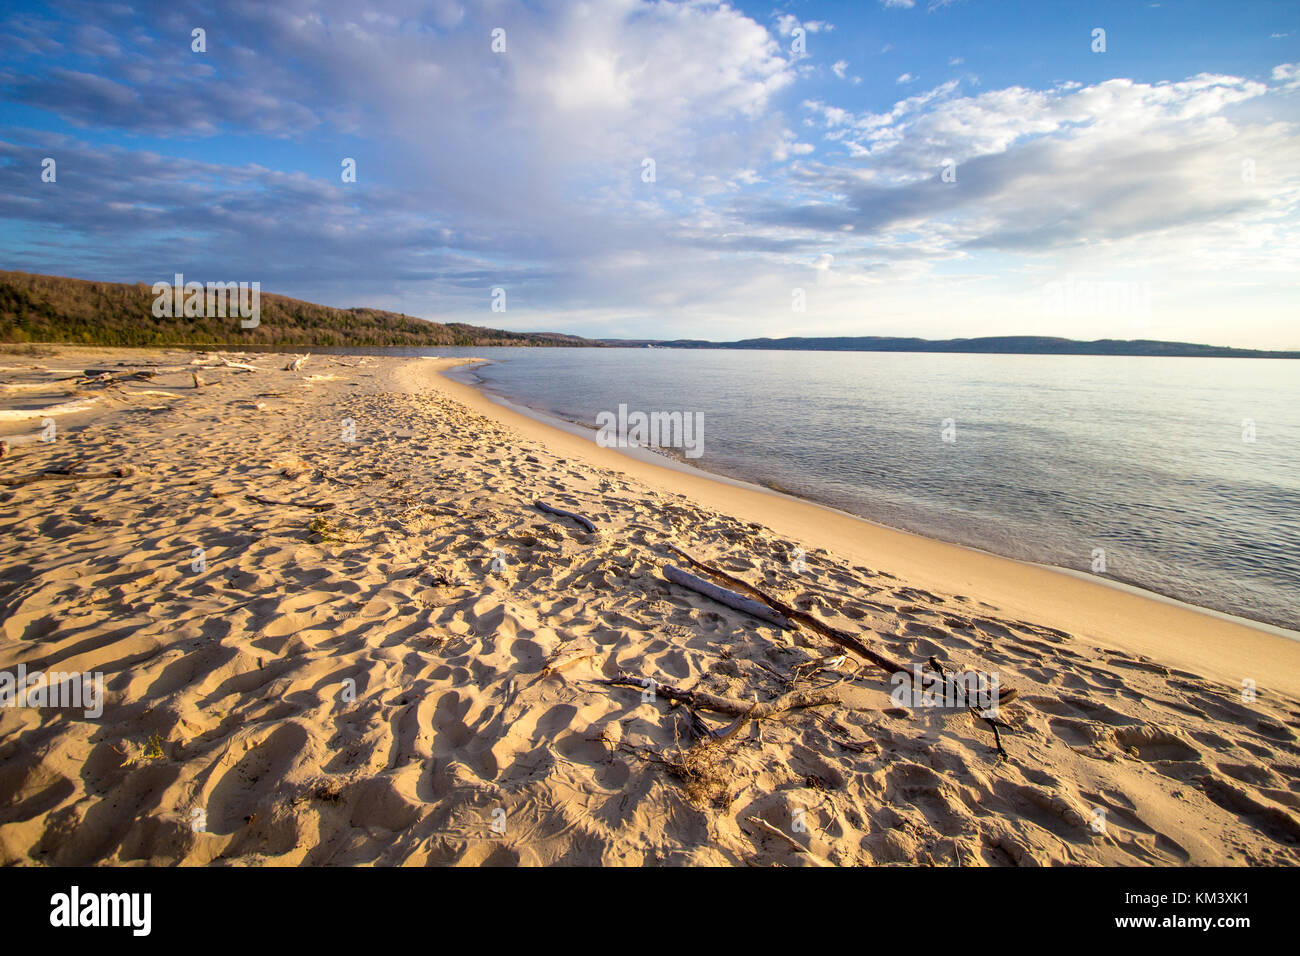 Fond de plage d'été ensoleillé. Une large plage de sable sur les rives du lac Supérieur à Sand Point dans Pictured Rocks National Lakeshore. Munising, au Michigan. Banque D'Images